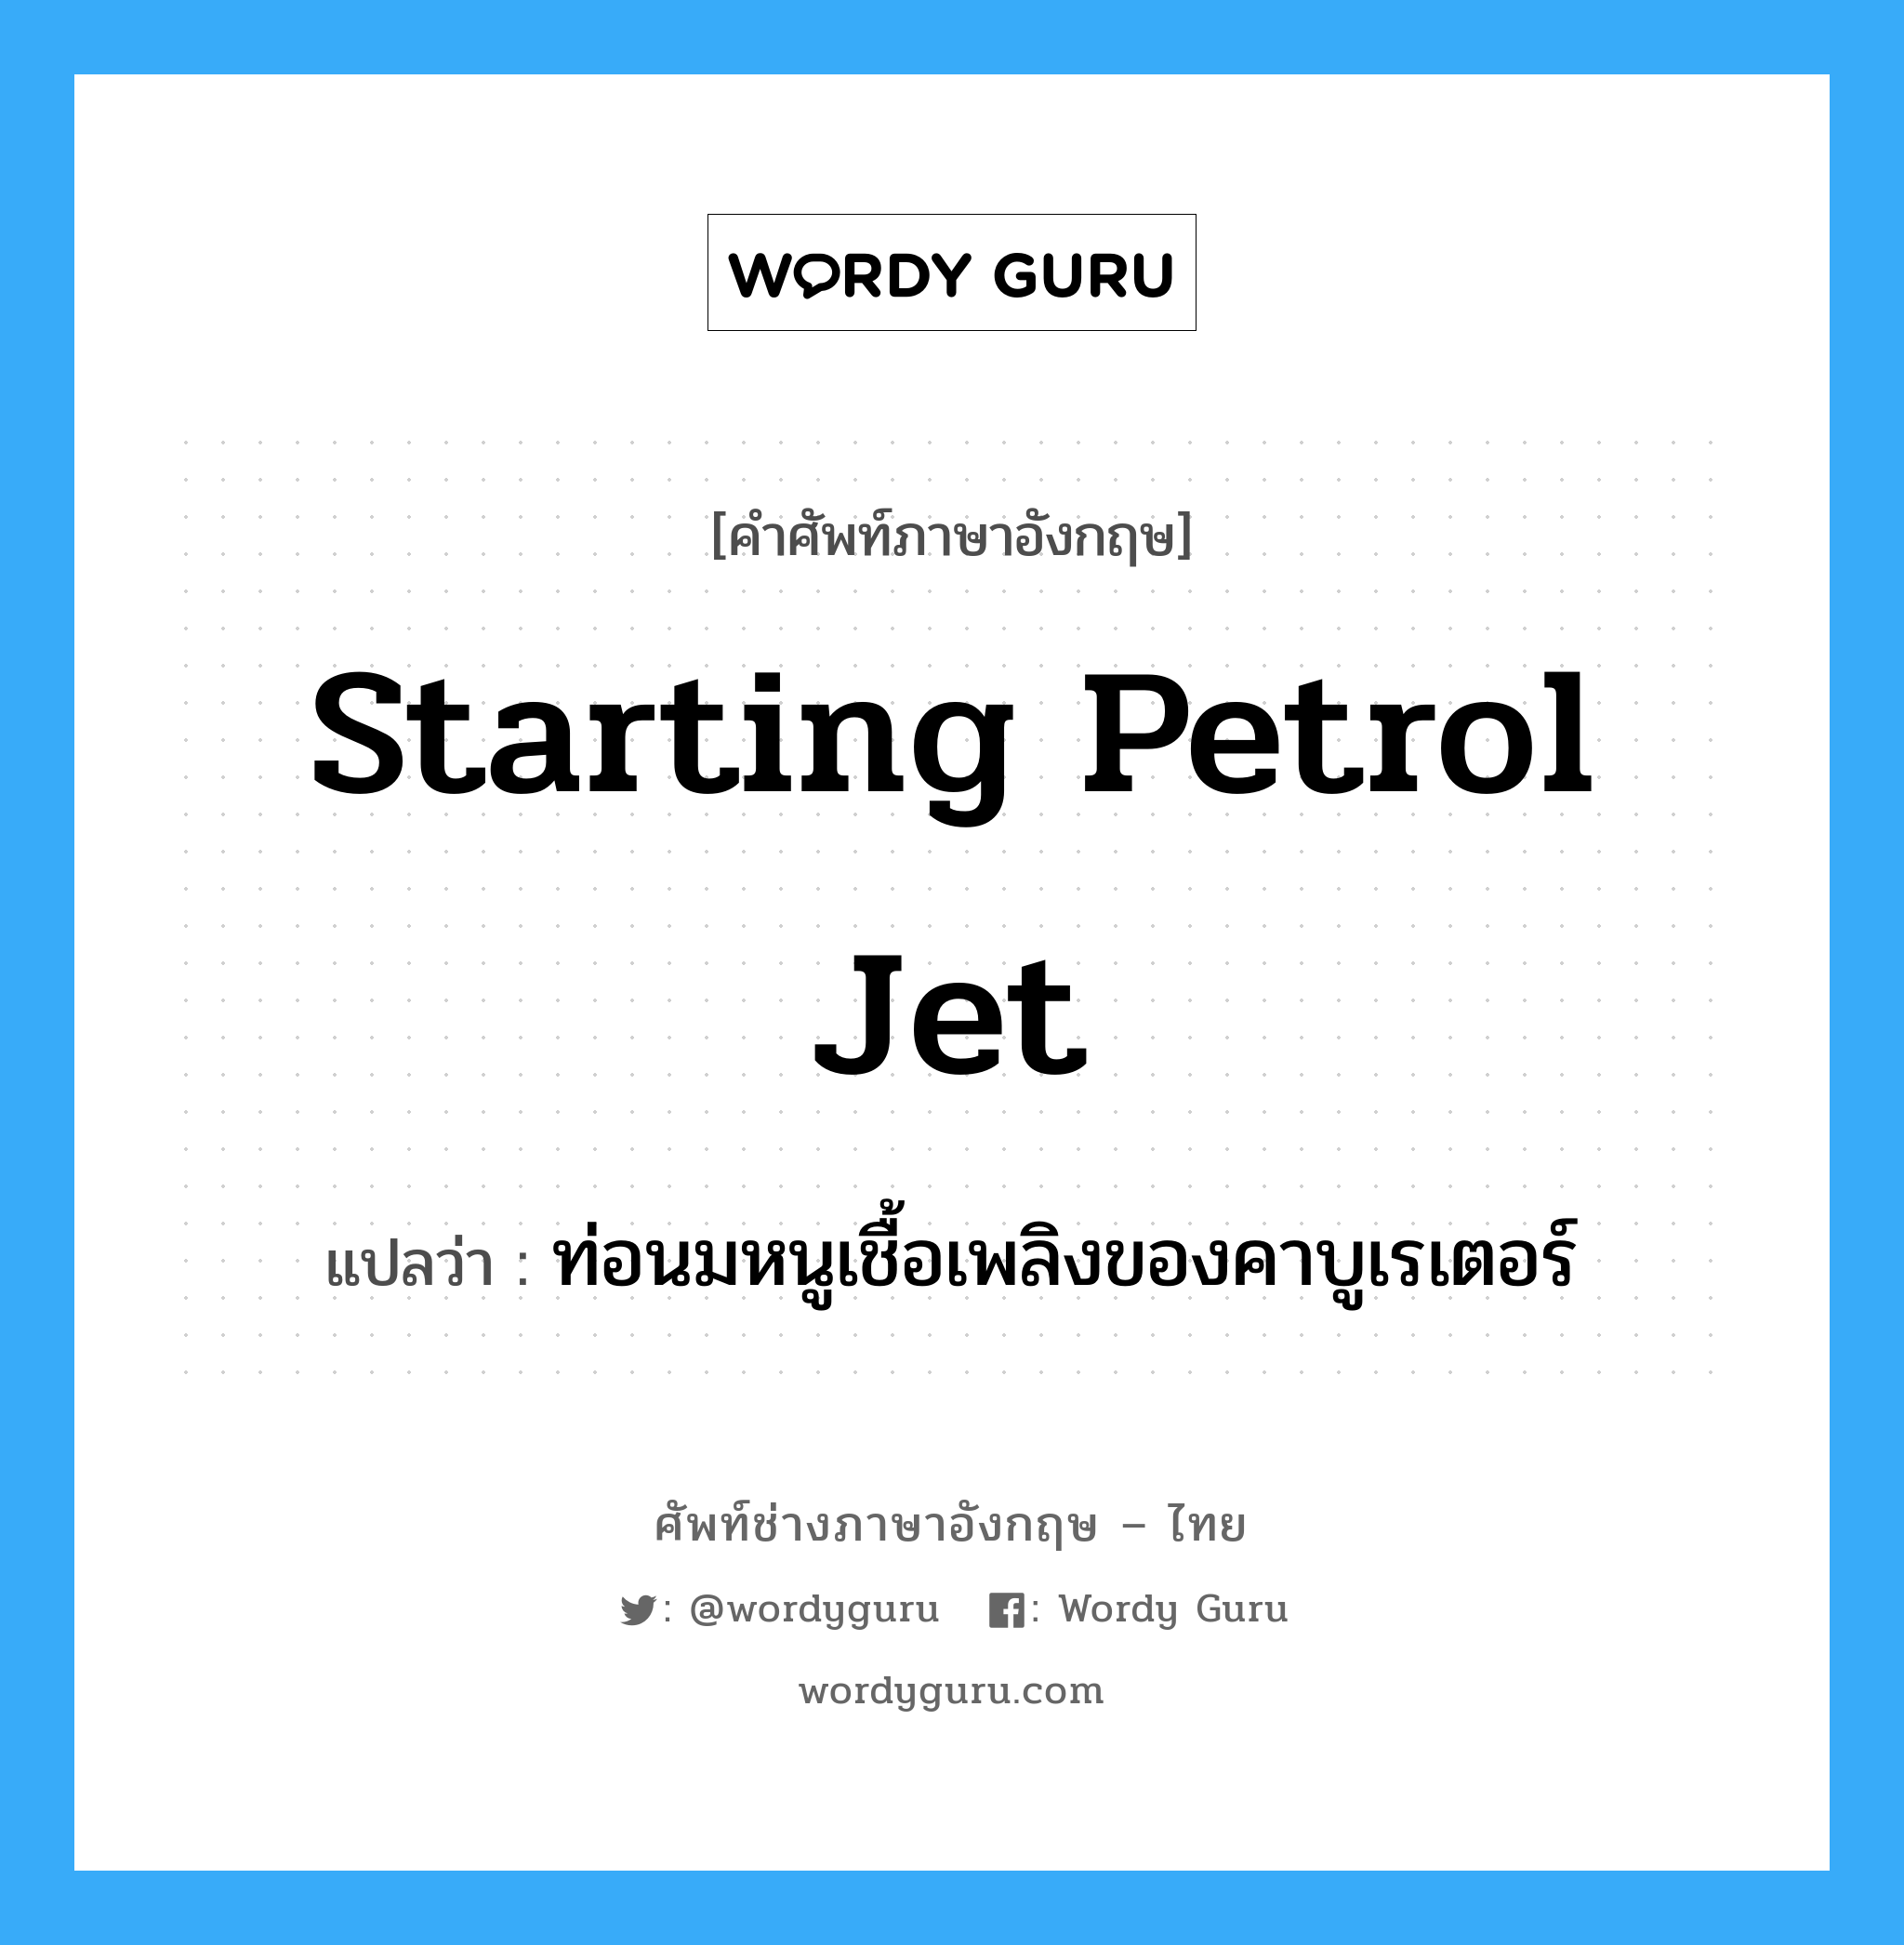 starting petrol jet แปลว่า?, คำศัพท์ช่างภาษาอังกฤษ - ไทย starting petrol jet คำศัพท์ภาษาอังกฤษ starting petrol jet แปลว่า ท่อนมหนูเชื้อเพลิงของคาบูเรเตอร์